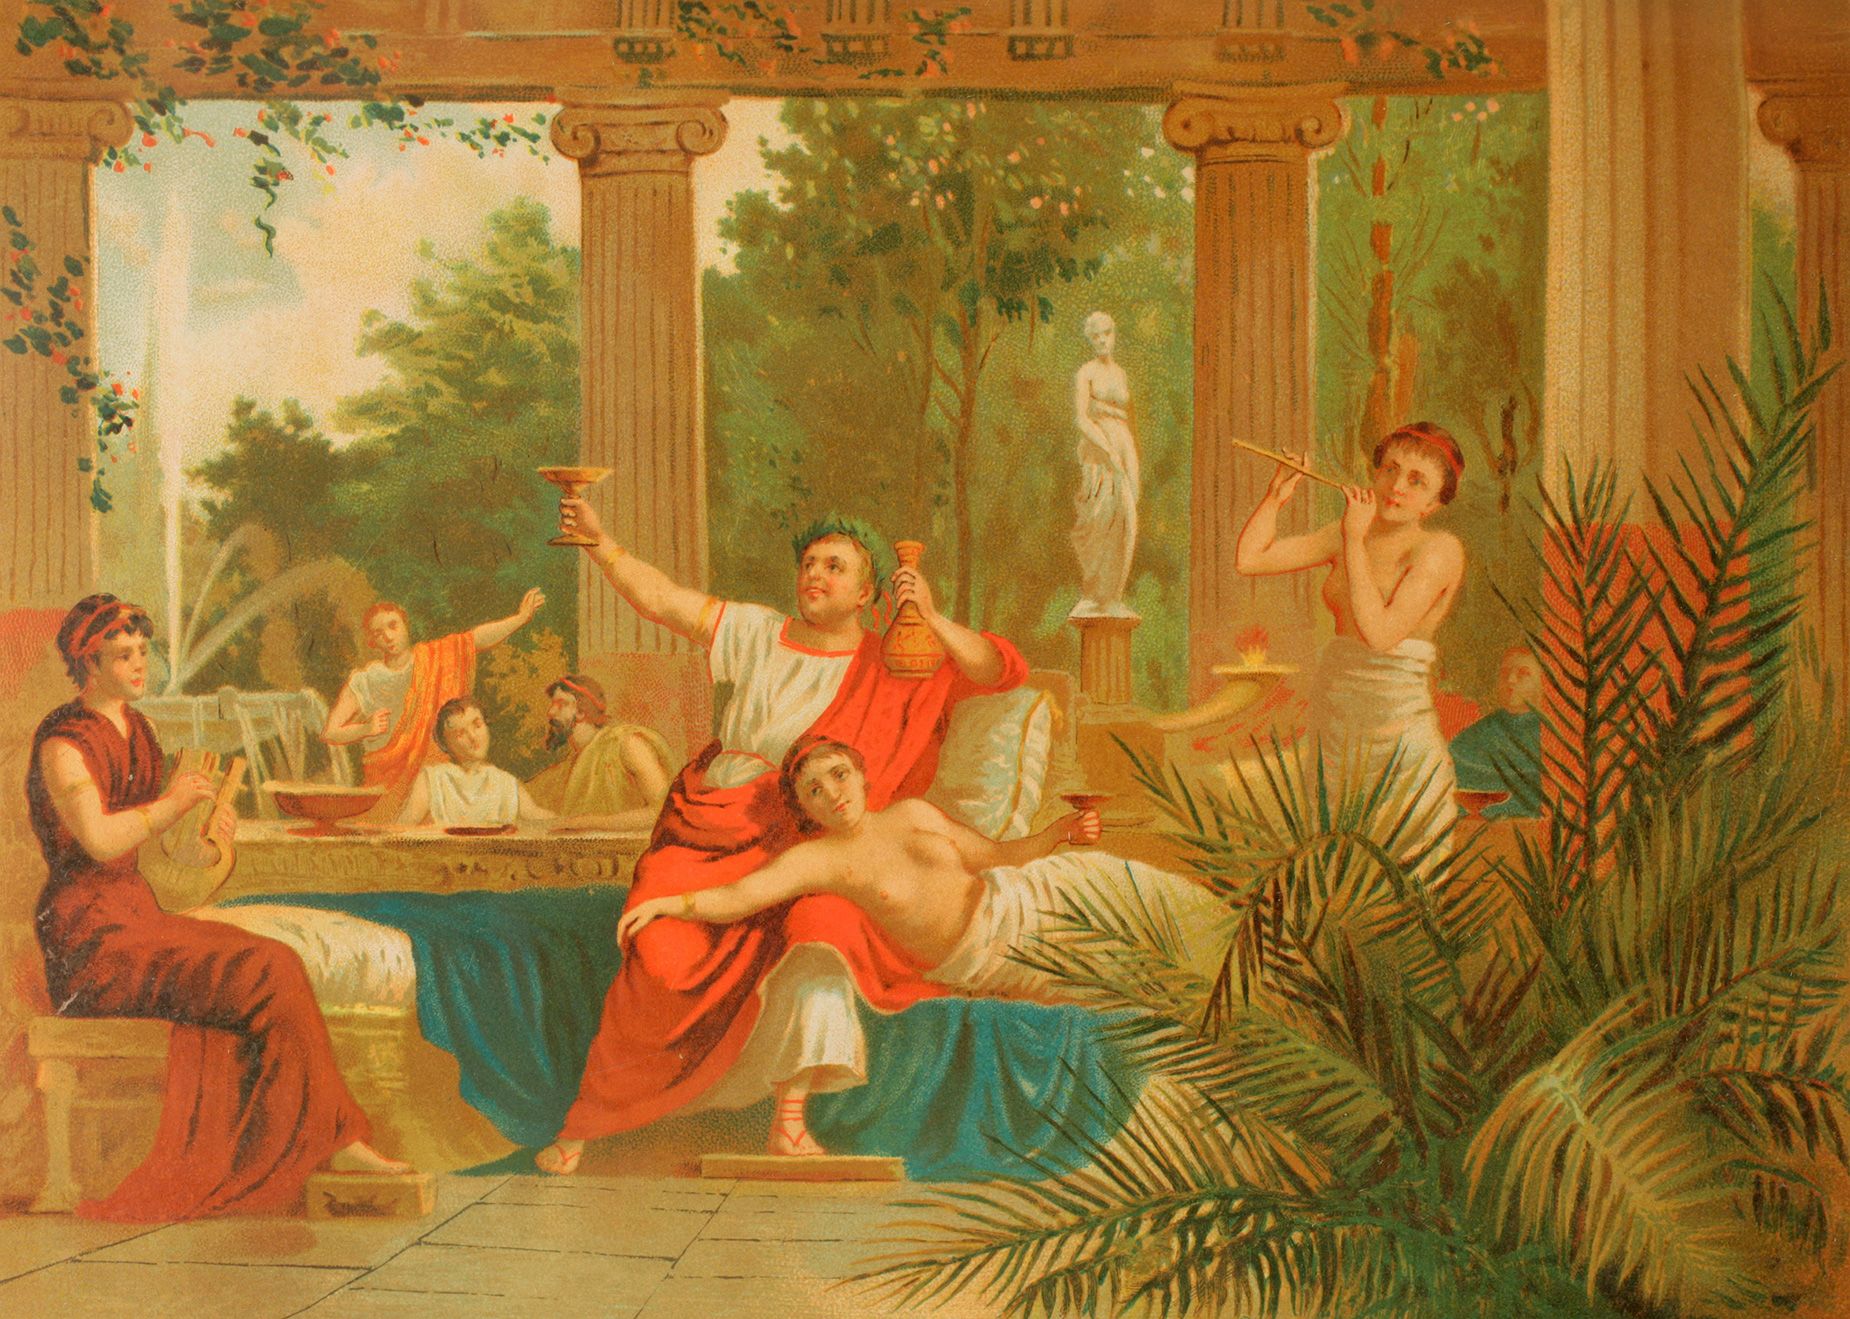 The emperor Nero participating in a bacchanalia, a Roman festival celebrating Bacchus.